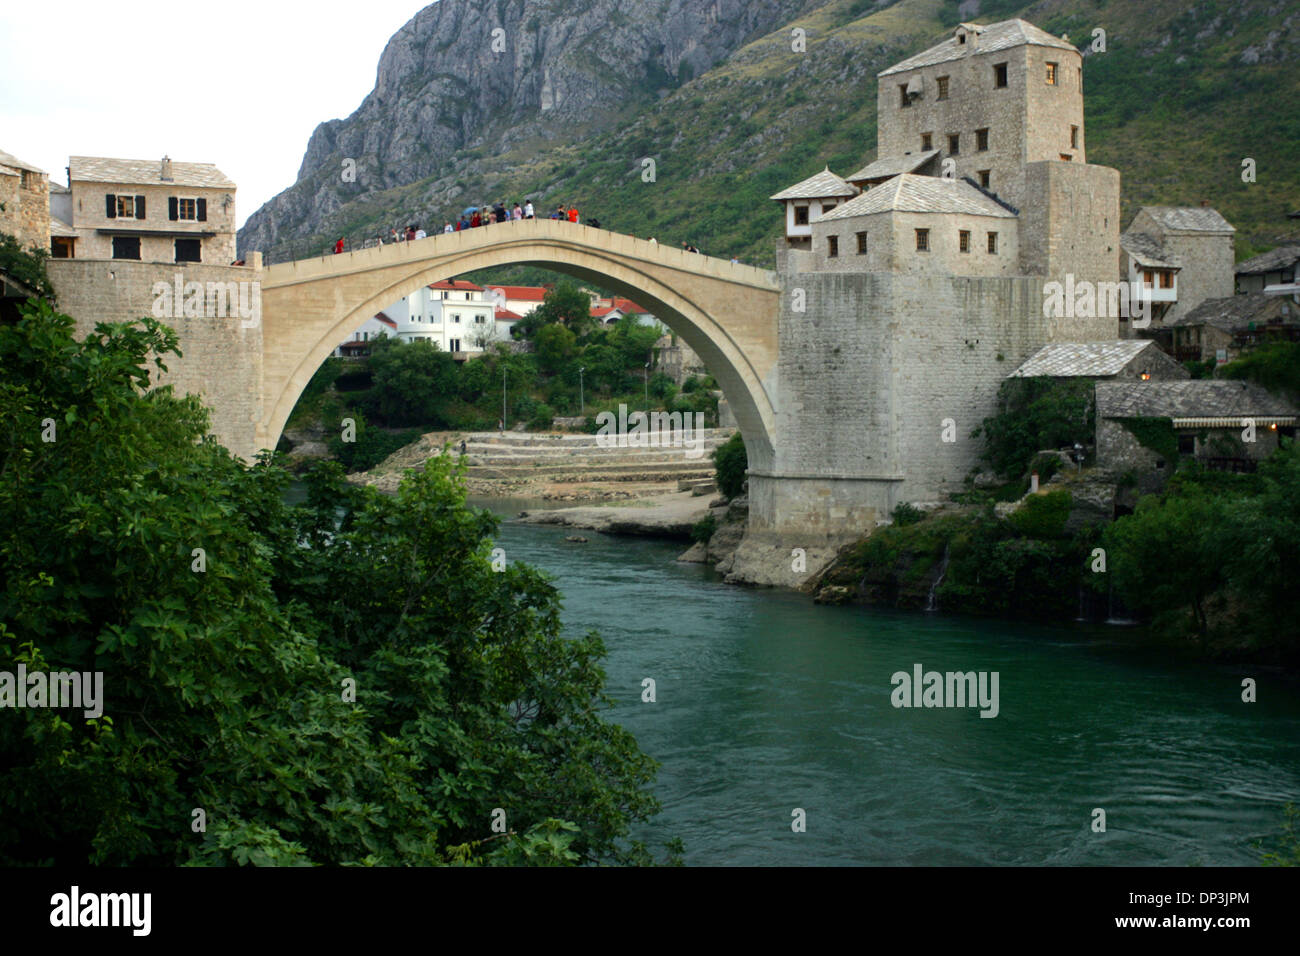 11 lug 2006; Mostar, Bosnia ed Erzegovina; il vecchio ponte di Mostar, la Bosnia ed Erzegovina è stata ricostruita nel 2003 dopo essere stato distrutto nel 1993 durante la guerra in Bosnia. Il simbolo della città, il Ponte Vecchio (Stari Most) è una delle più importanti costruzioni di epoca ottomana e costruita dallo studente del famoso architetto Ottomano Mimar Sinan ( architetto Sinan), Mimar Hayrettin Foto Stock